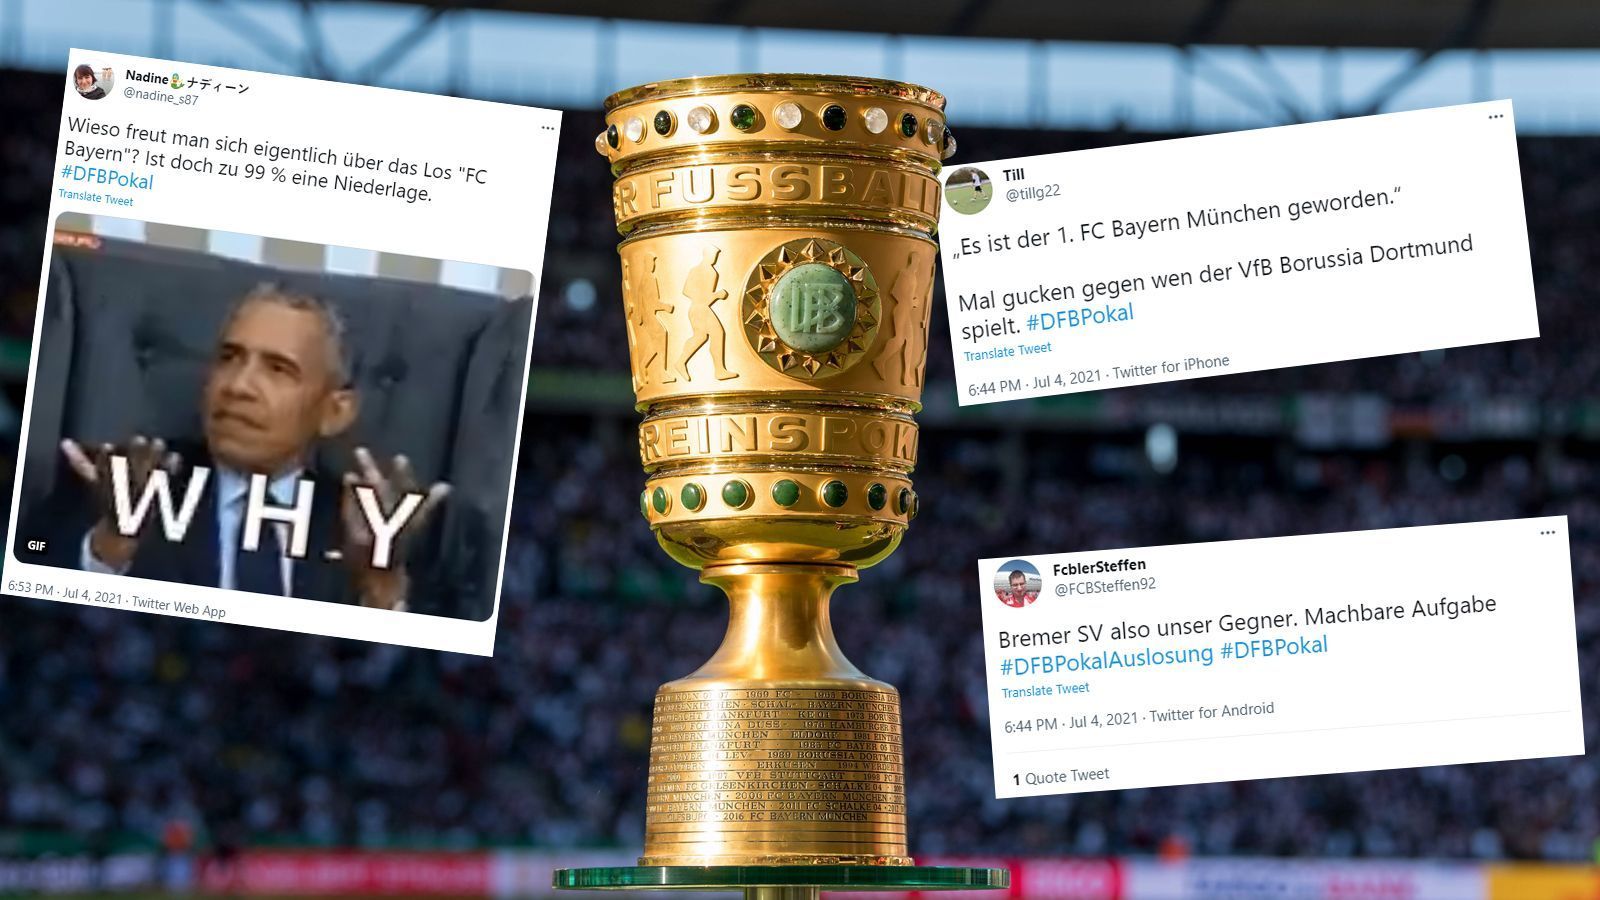 
                <strong>Netzreaktionen zum Bayern-Los</strong><br>
                Der FC Bayern München bekommt es in der ersten Pokalrunde mit dem Fünftligisten Bremer SV zu tun. Sportlich ein vermeintlich einfaches Los für den Rekordmeister. Da sorgte die Benennung als "1. FC Bayern München" bei der Übertragung der Auslosung unter den Bayern-Fans für mehr Aufsehen.
              